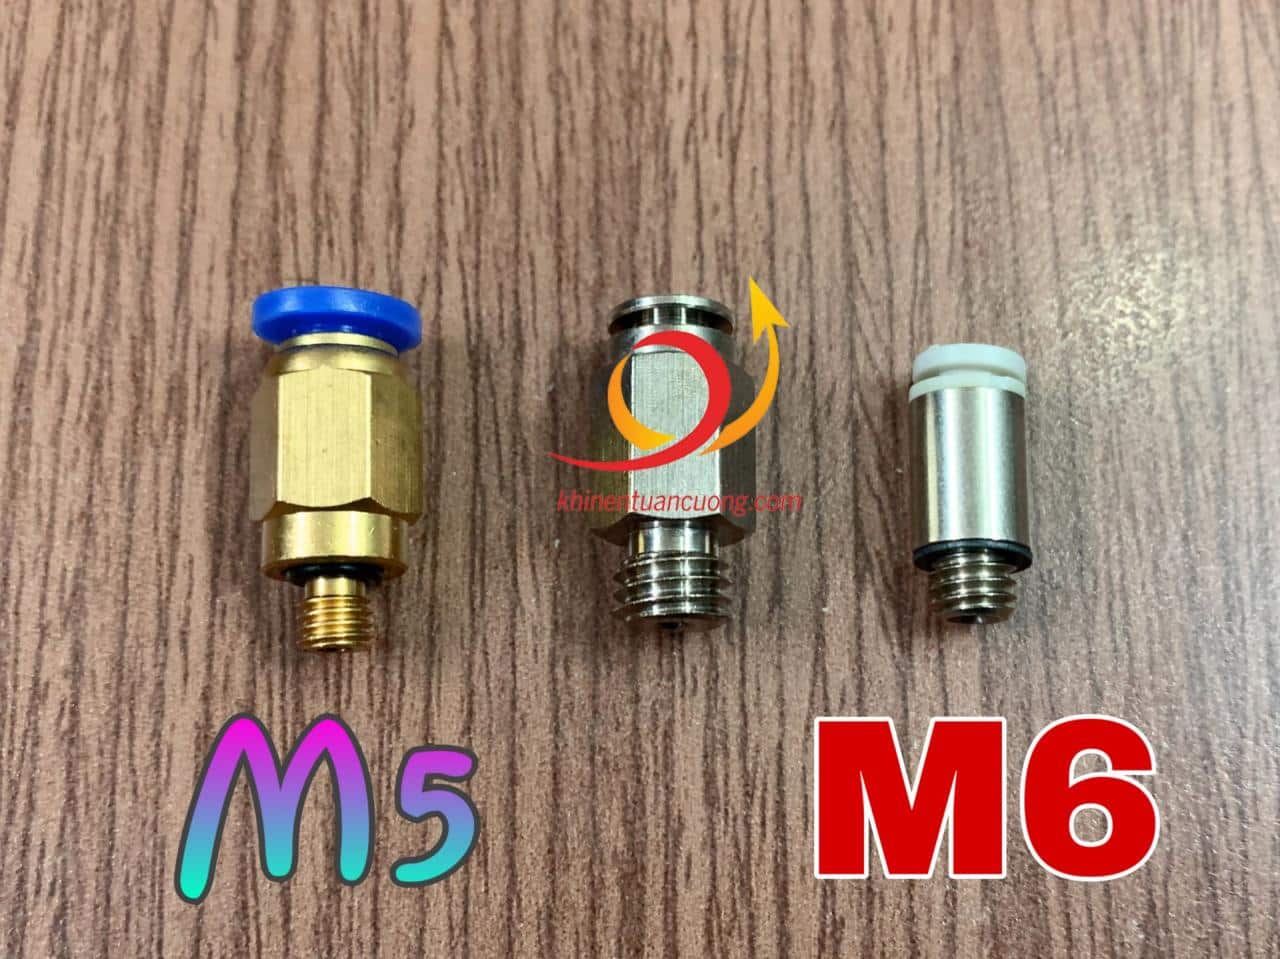 Đặt cạch cút nối ren M5 mã PC4-M5 và cút nối trơn KJS04-M6, chúng ta thấy ren M8 lớn hơn và bước ren cũng lớn hơn hẳn